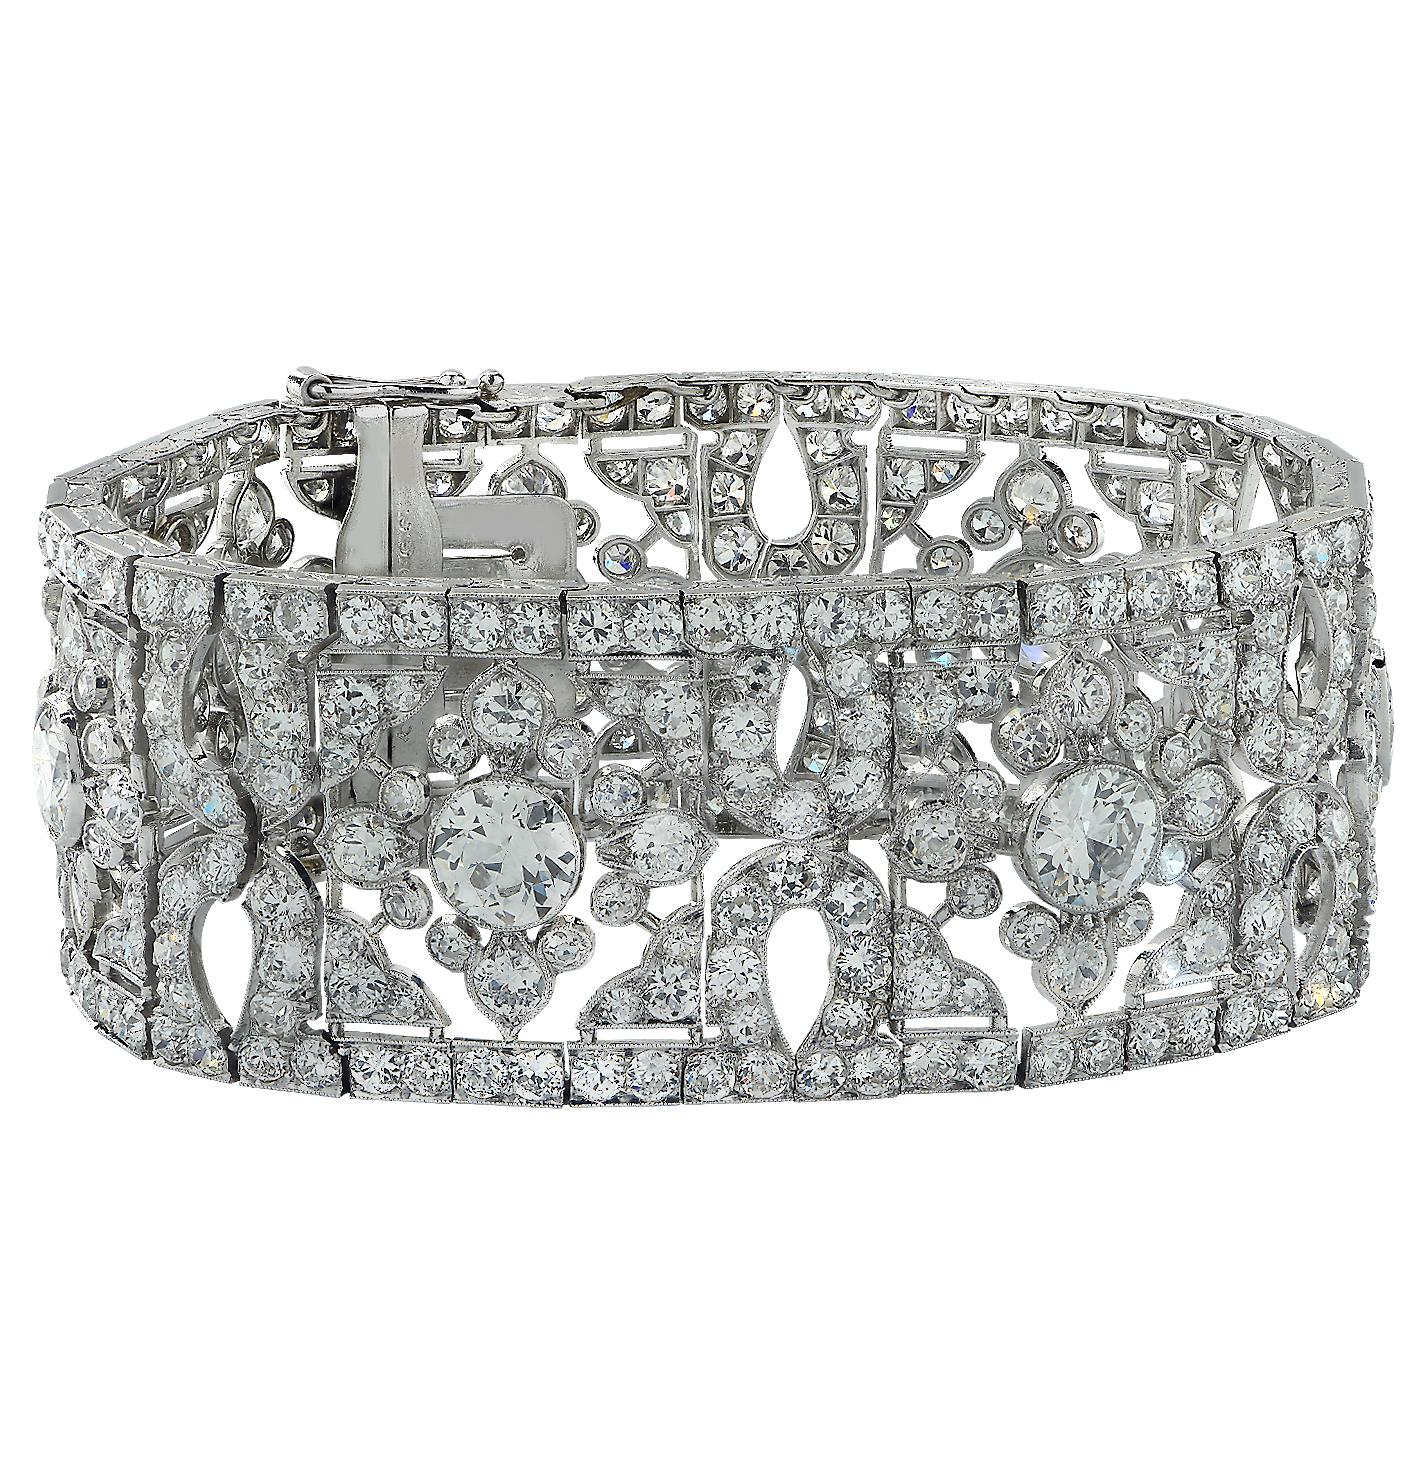 Women's French Belle Époque Cartier 40 Carat Old European Cut Diamond Bracelet For Sale